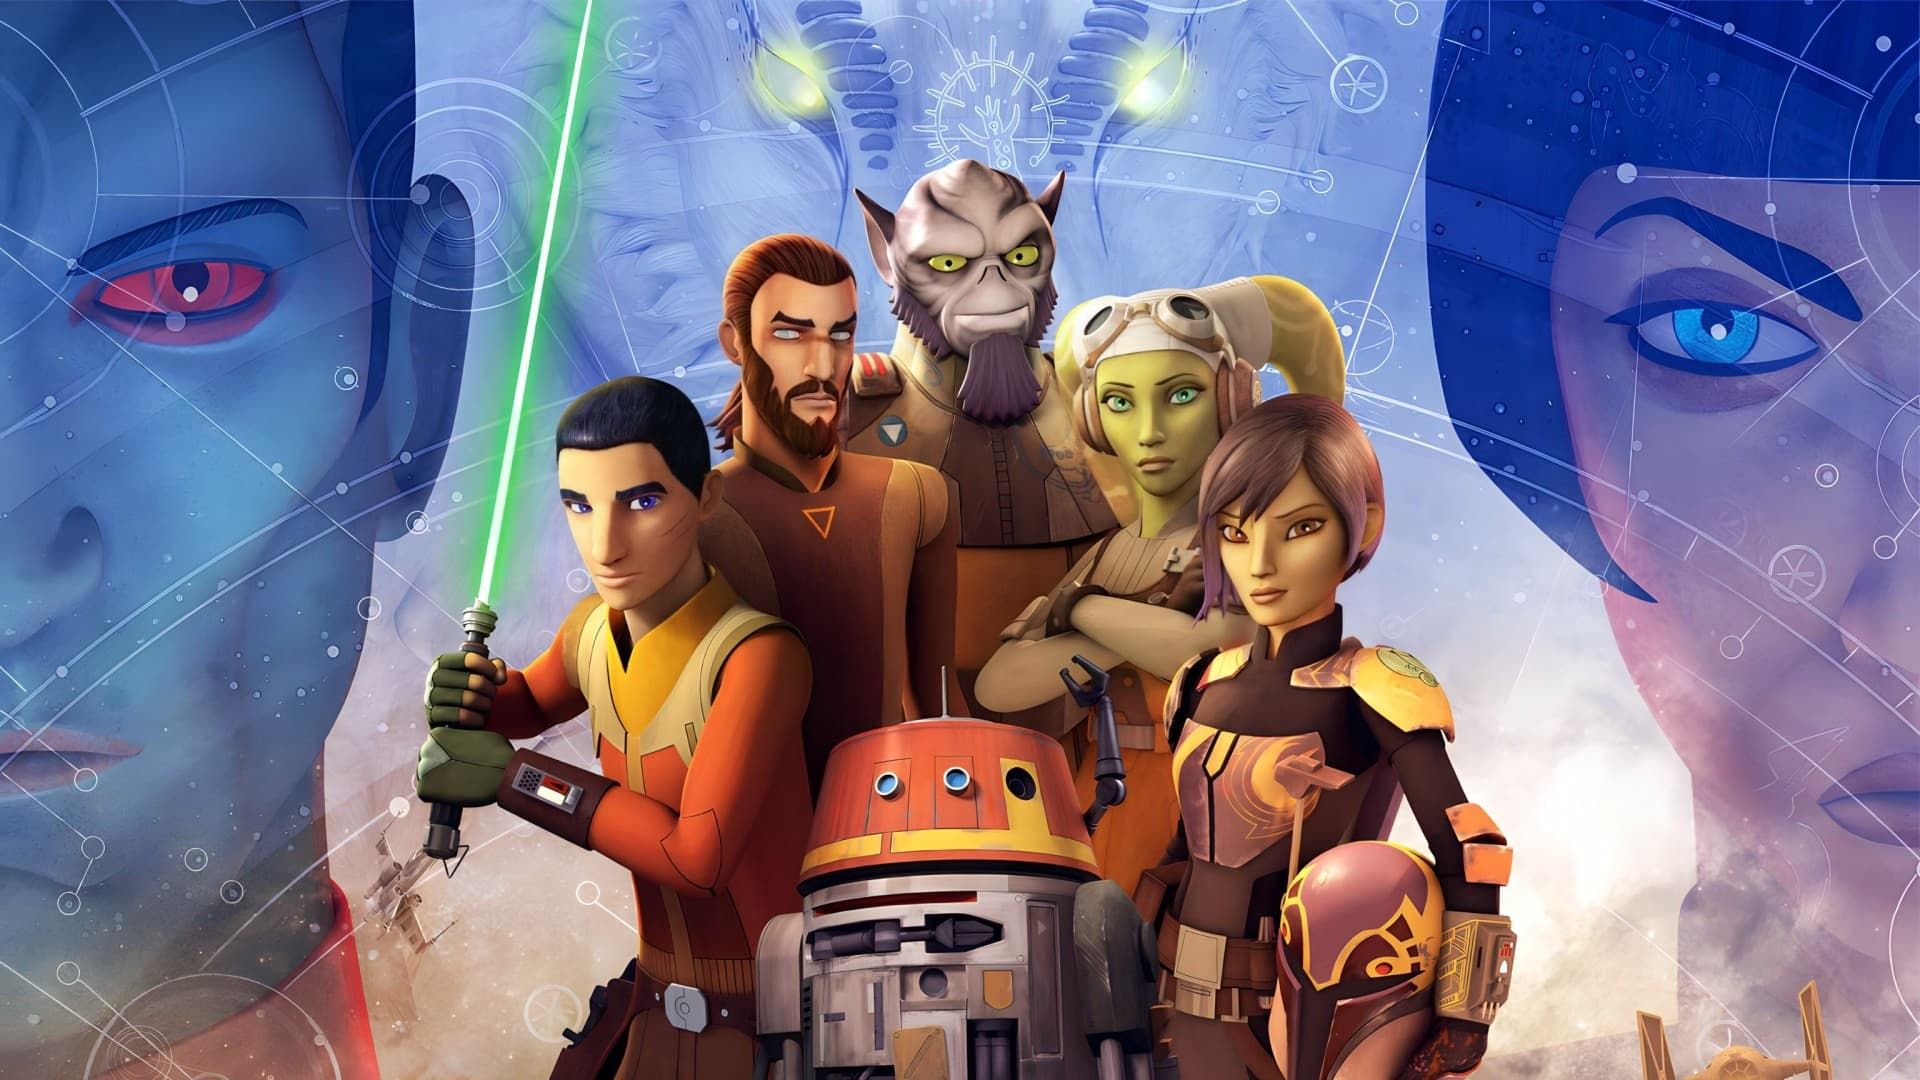 Star Wars Rebels background